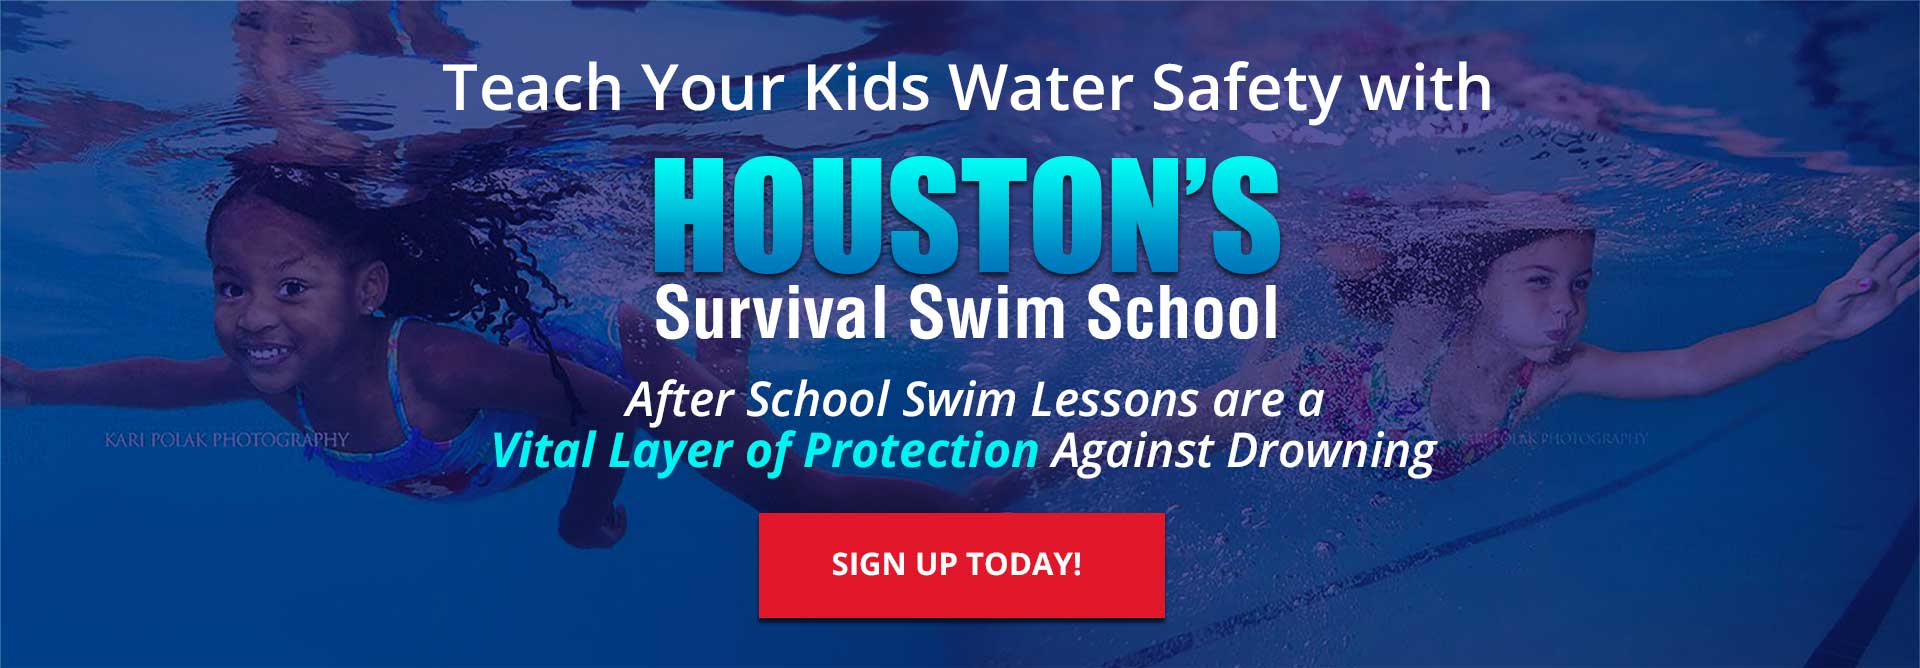 Houstons Survival Swim School